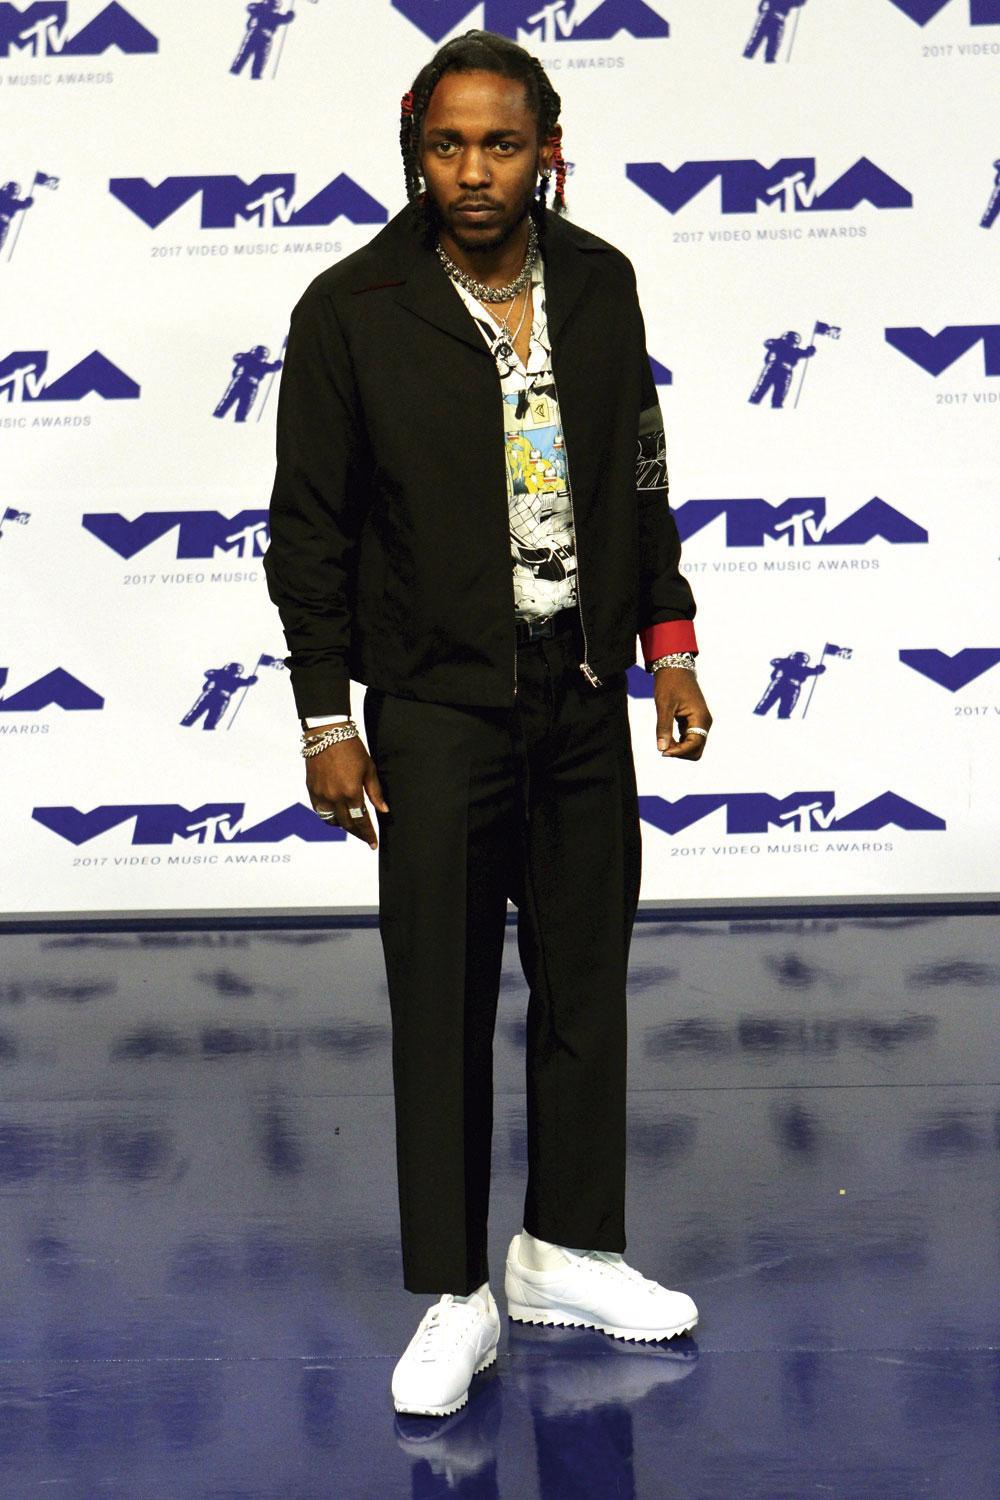 Kendrick Lamar. Après avoir collaboré avec Reebok, le rappeur officie désormais pour Nike en publiant ses photos avec les derniers modèles de baskets Cortez aux pieds.